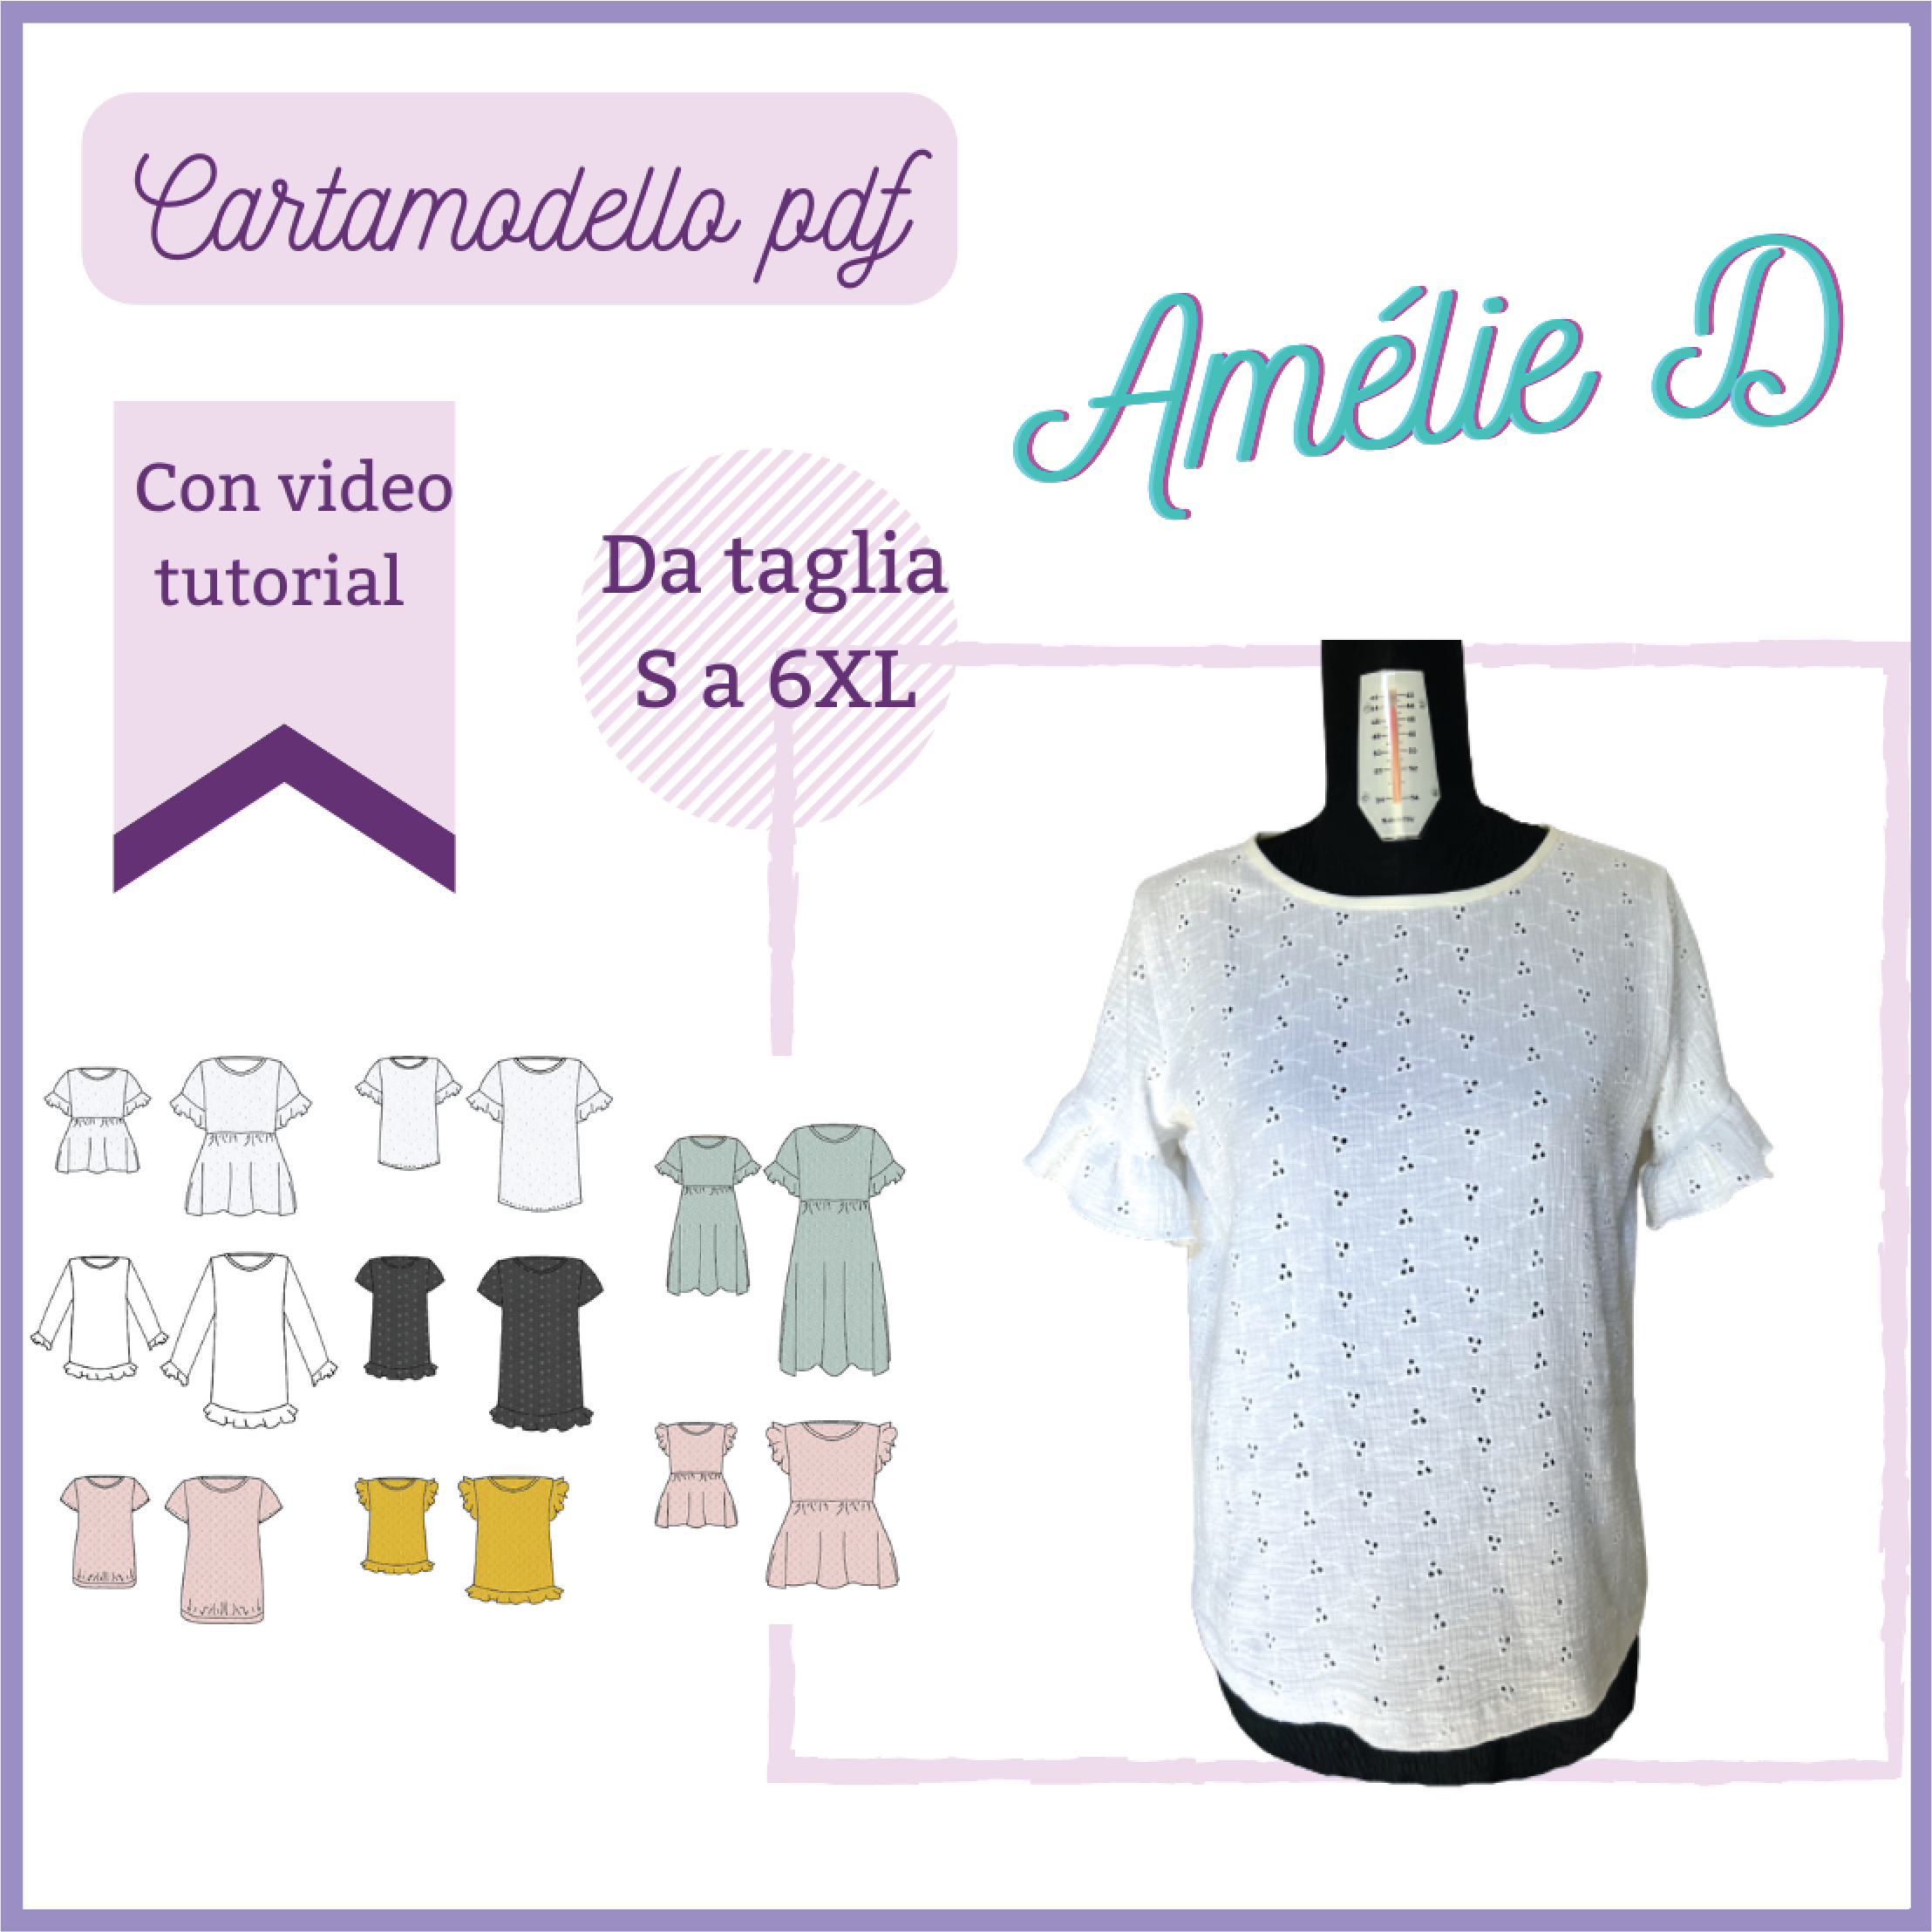 Blusa-vestito CARTAMODELLO donna multi versione Amélie, tg S a 6Xl –  mammaconstoffashop